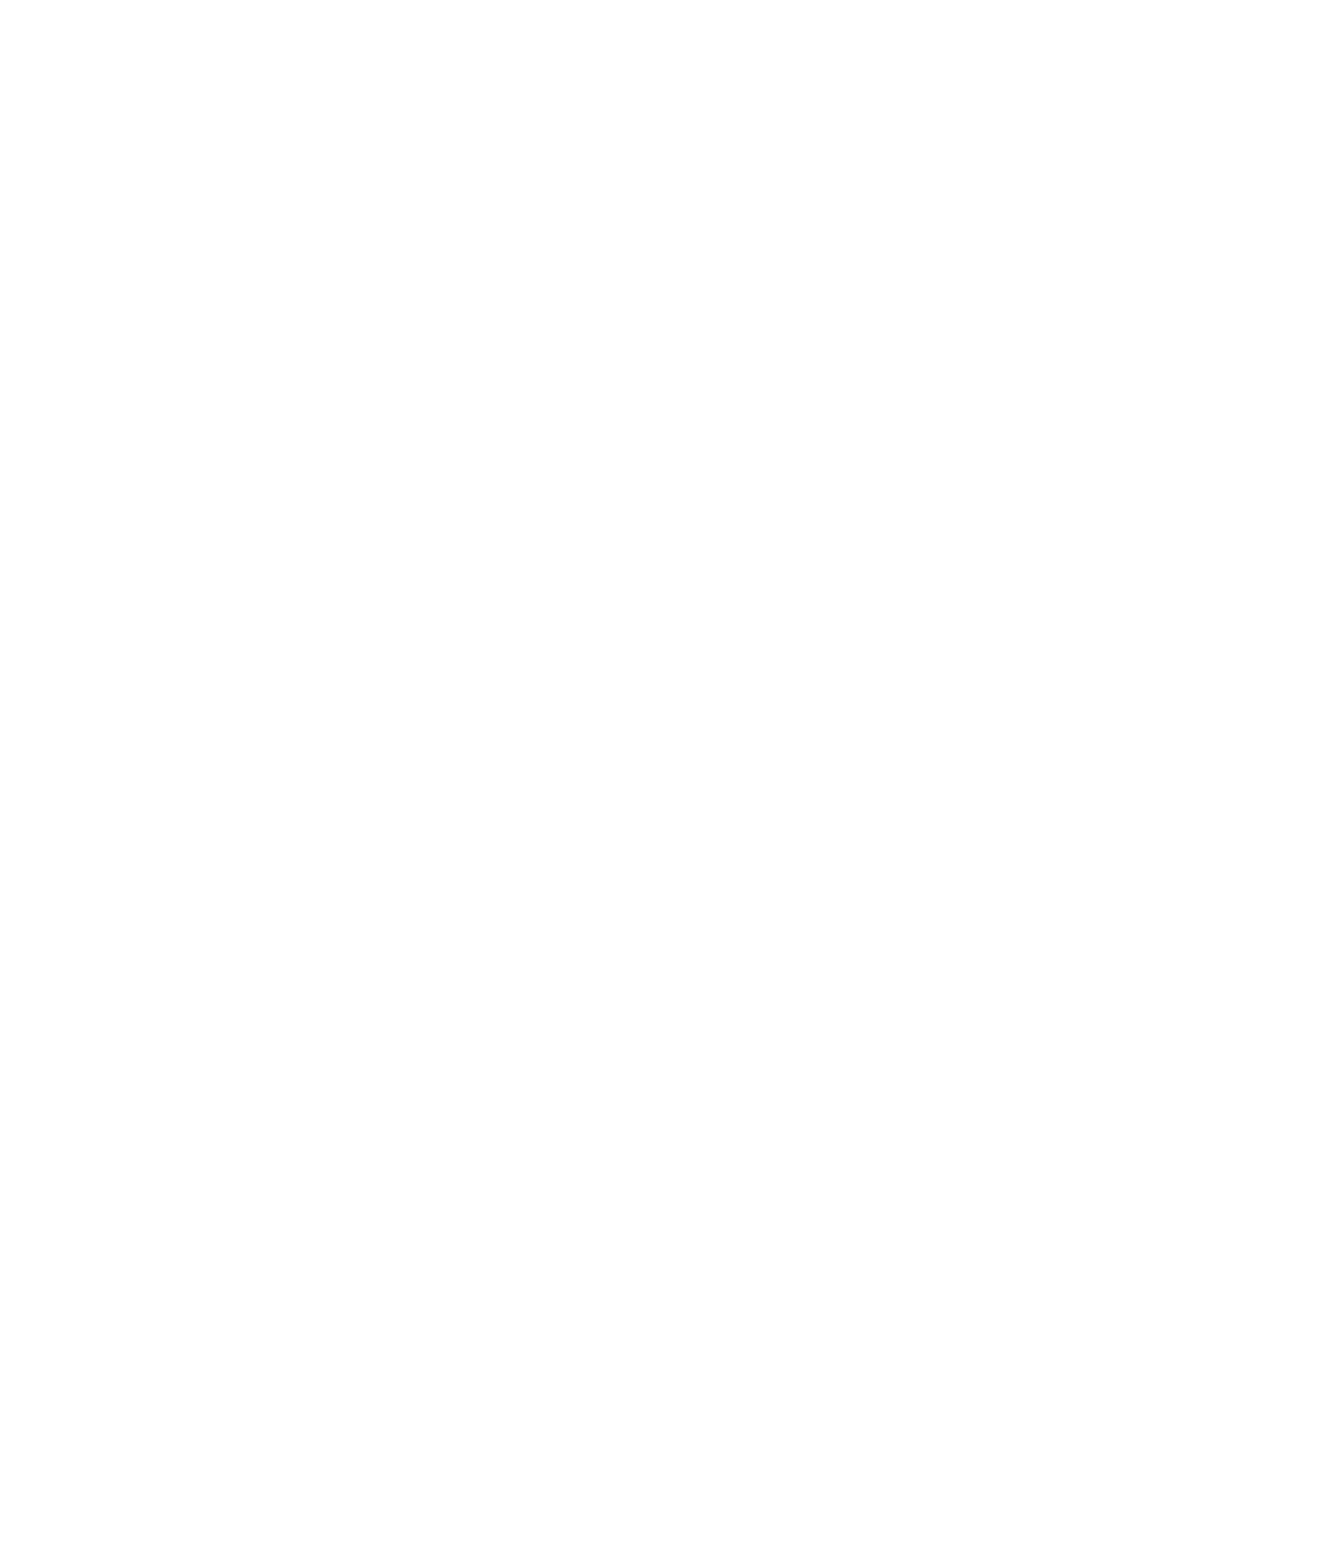 PCTEL logo for dark backgrounds (transparent PNG)